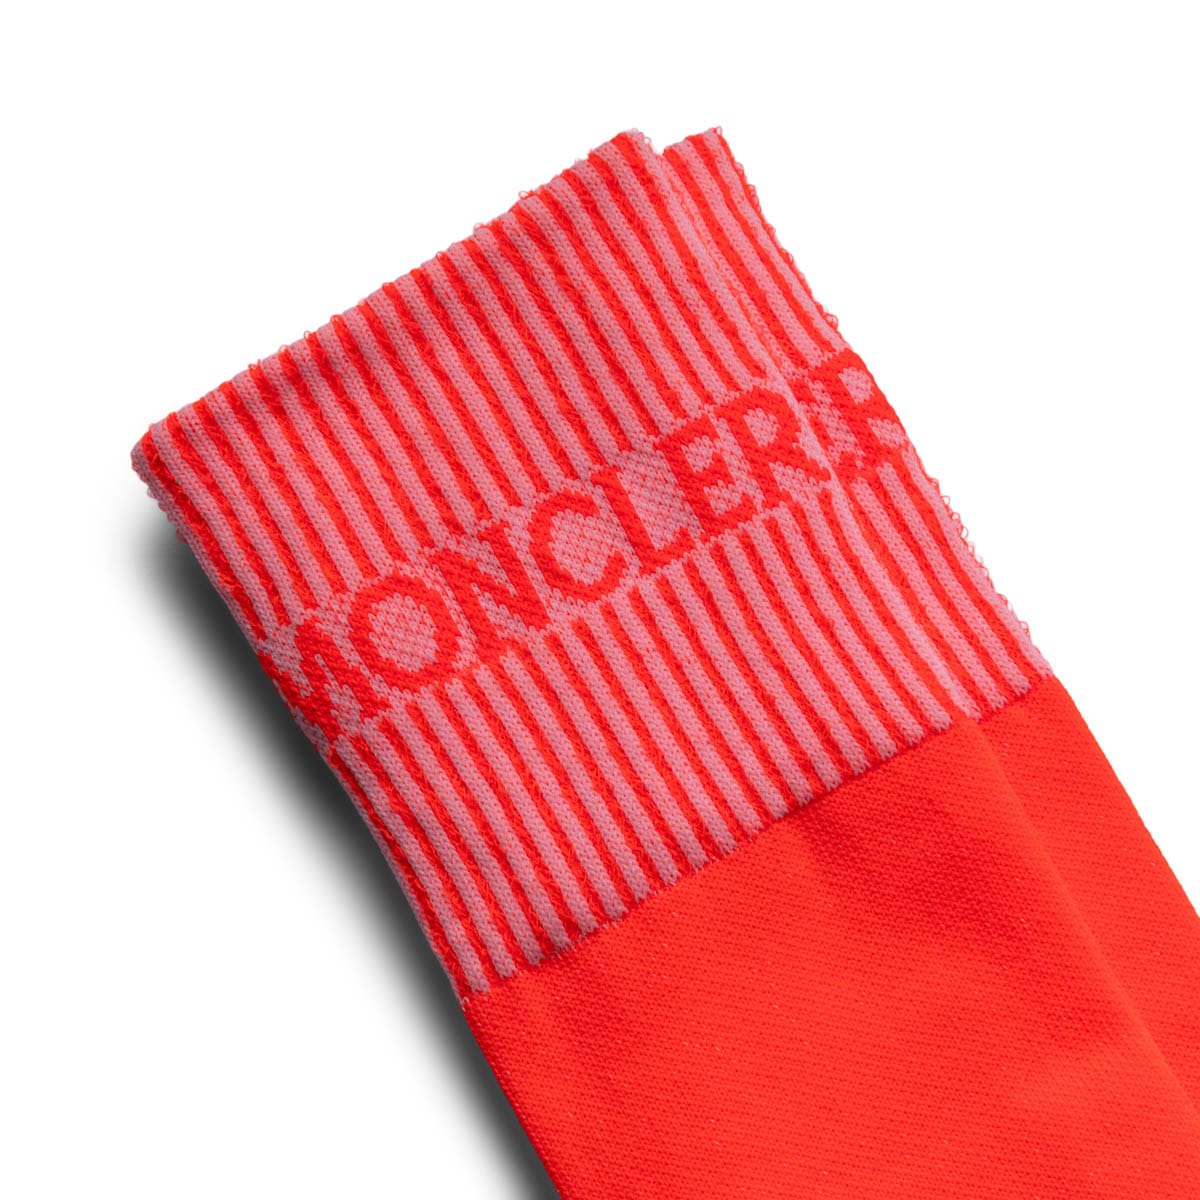 Moncler Genius Socks ORANGE / L SOCKS